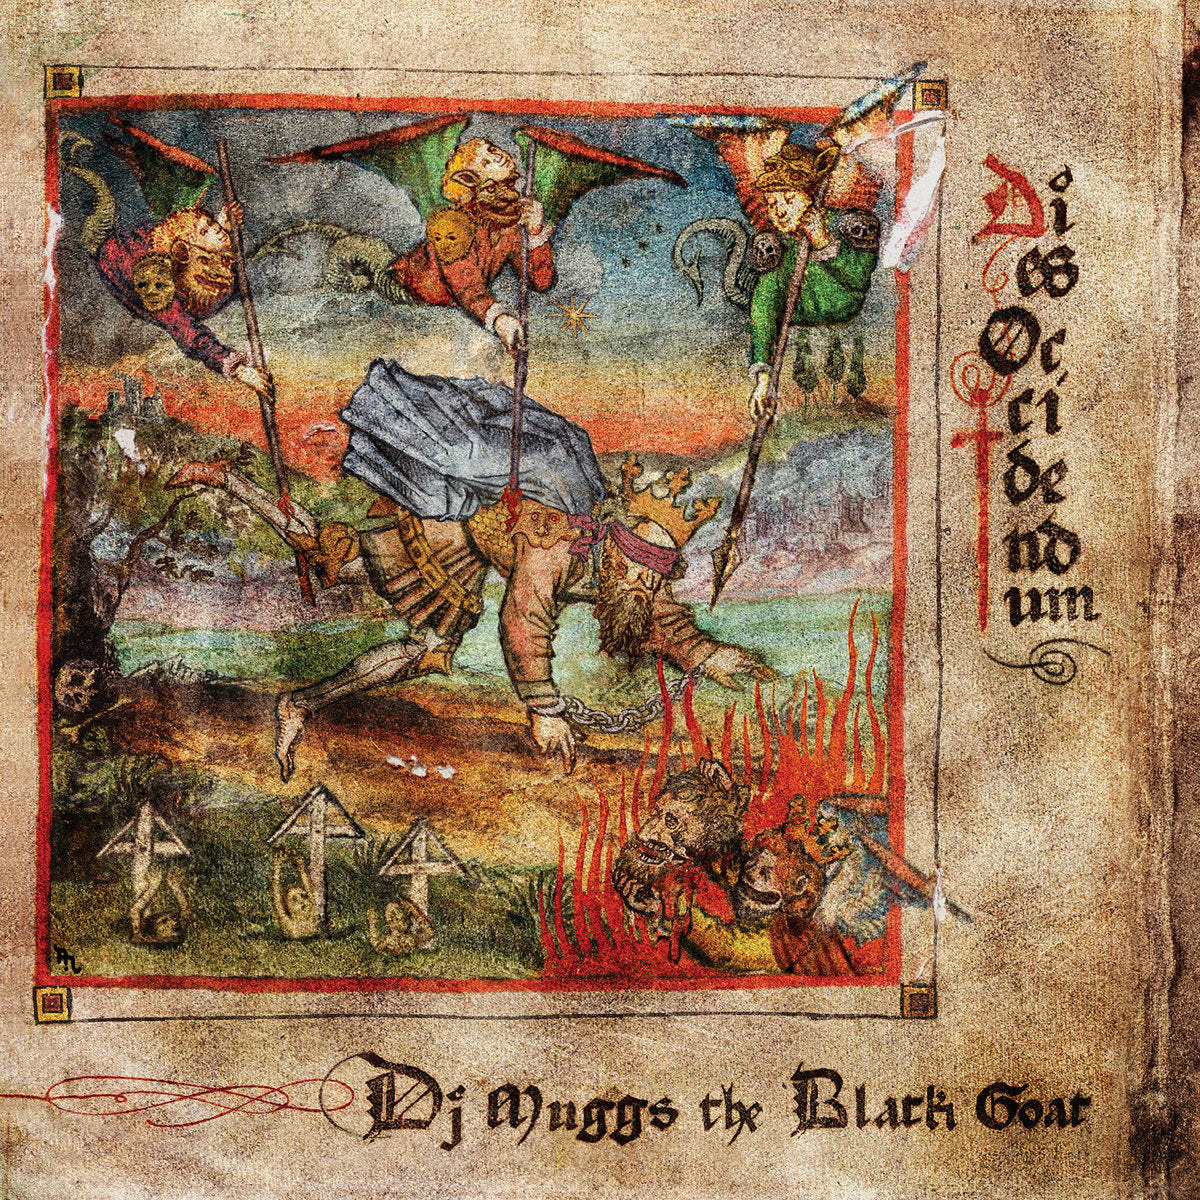 DJ MUGGS THE BLACK GOAT - Dies Occidendum - LP - Red Vinyl